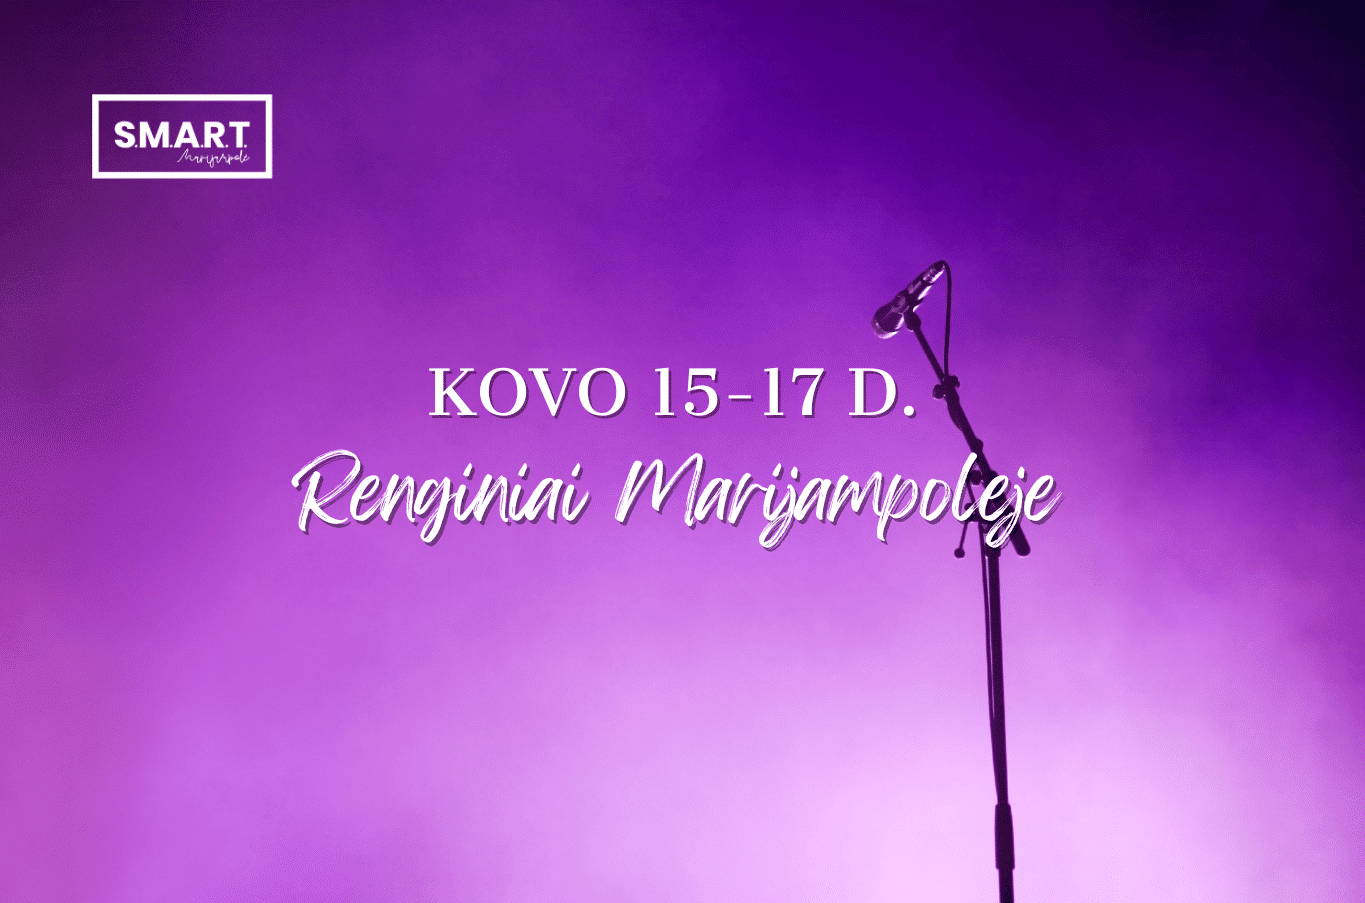 You are currently viewing Savaitgalio renginiai Marijampolėje | 03.15-03.17